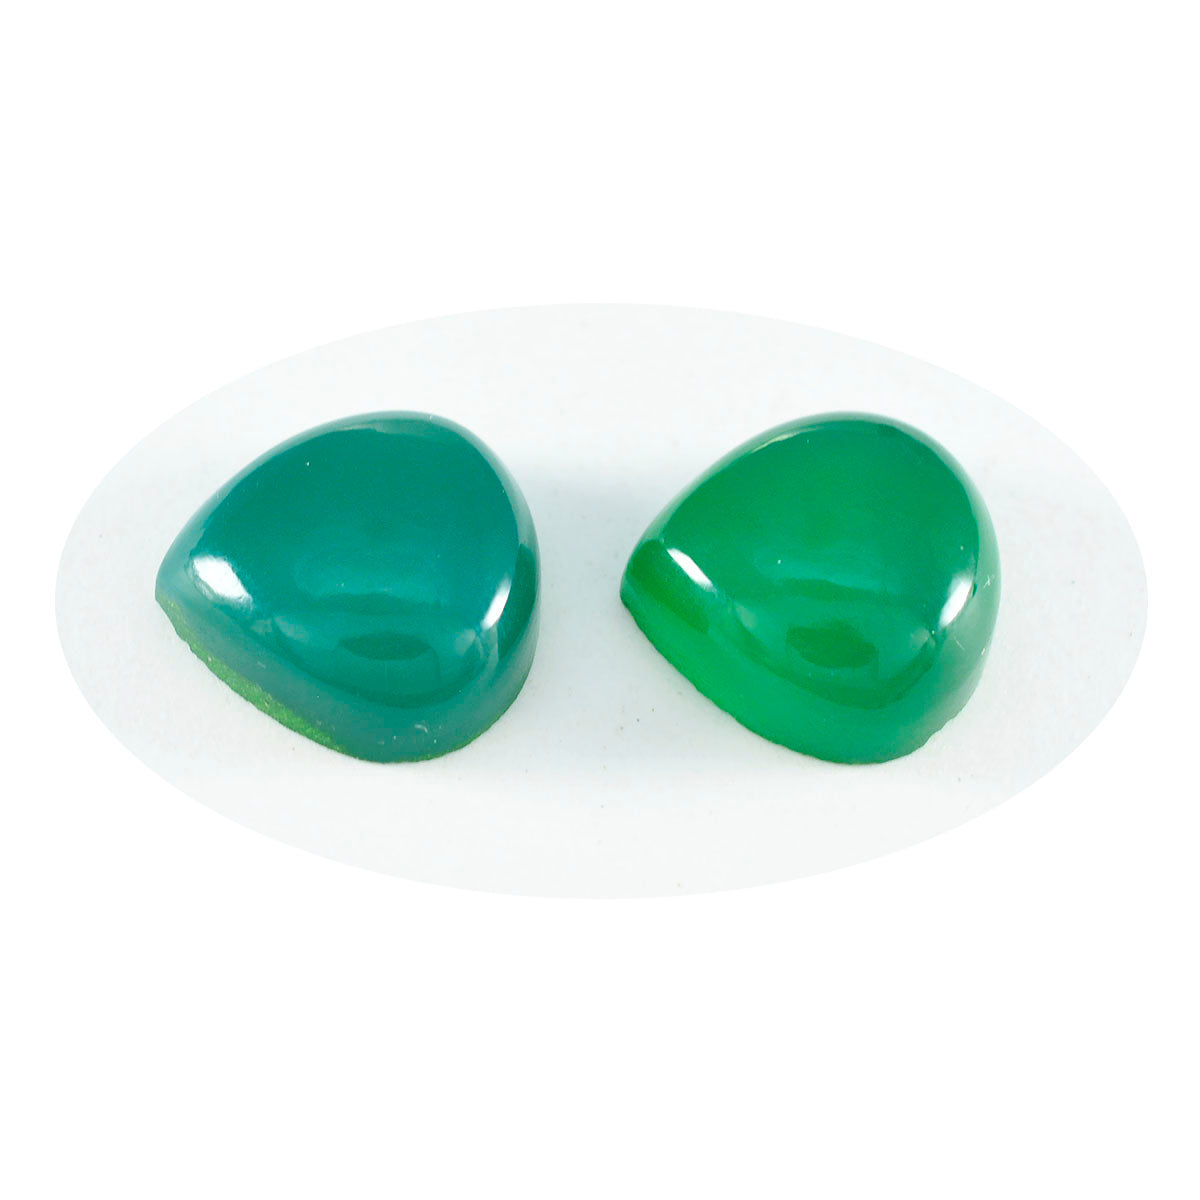 riyogems 1 шт. зеленый оникс кабошон 11х11 мм в форме сердца драгоценный камень замечательного качества